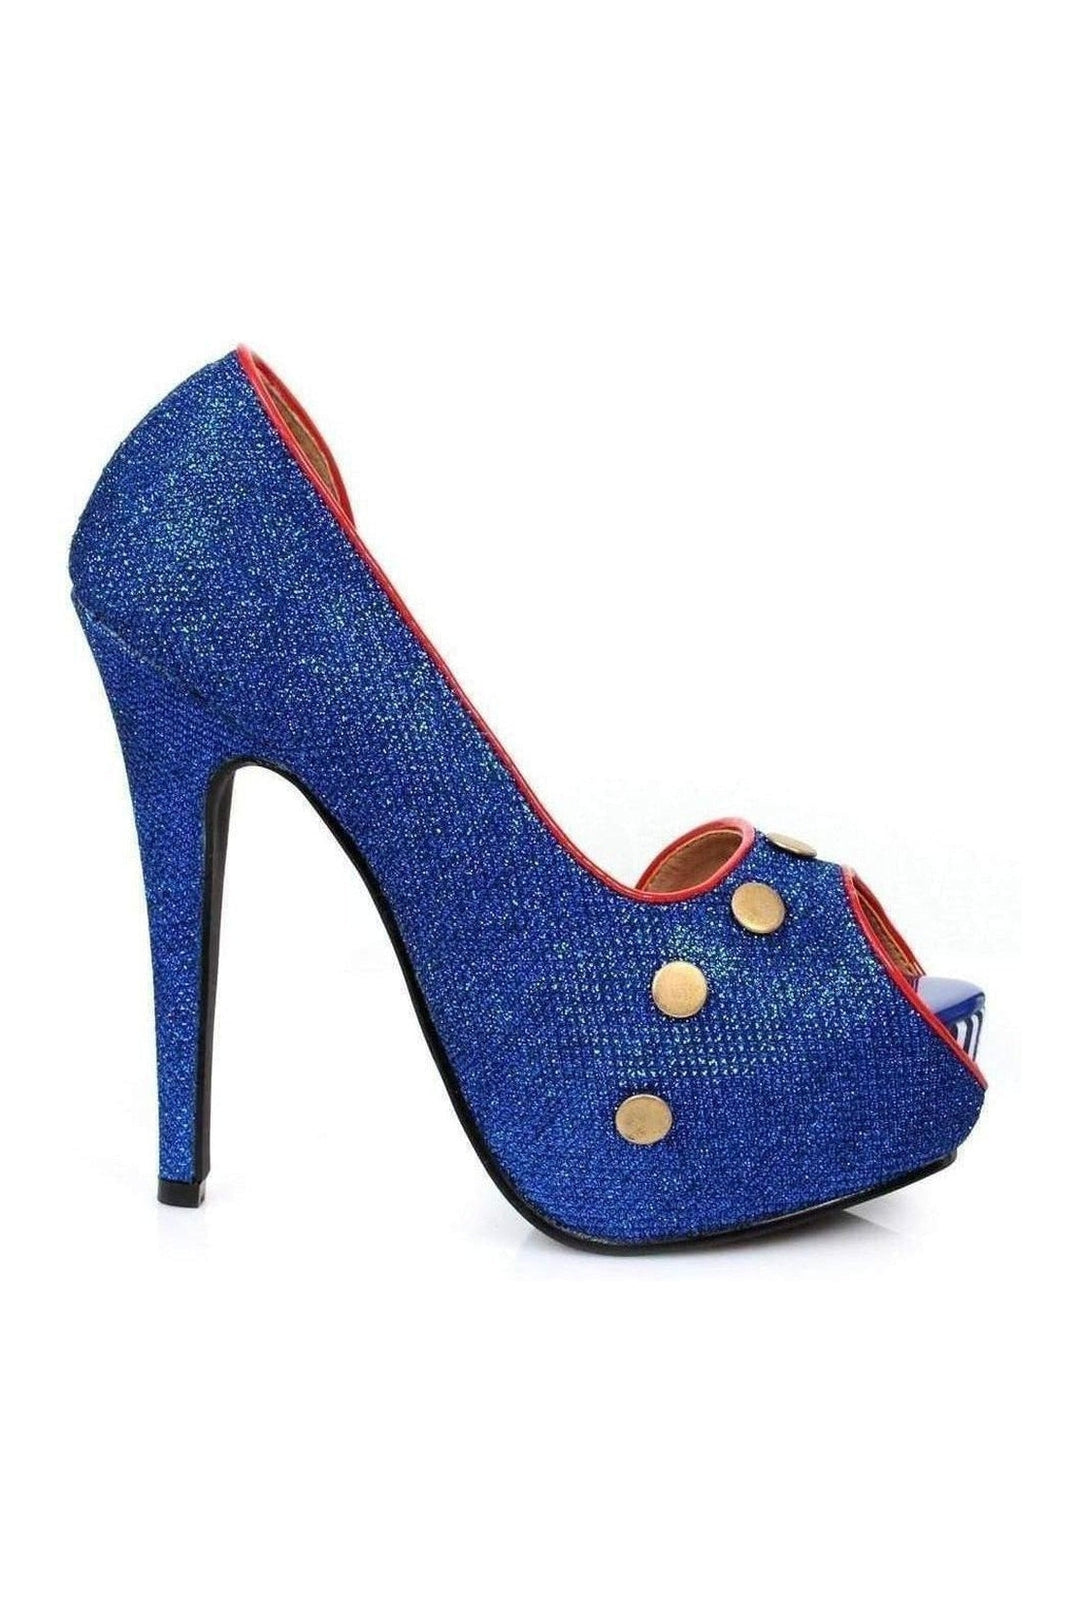 519-HARBOR Pump | Blue Glitter-Ellie Shoes-Blue-Pumps-SEXYSHOES.COM